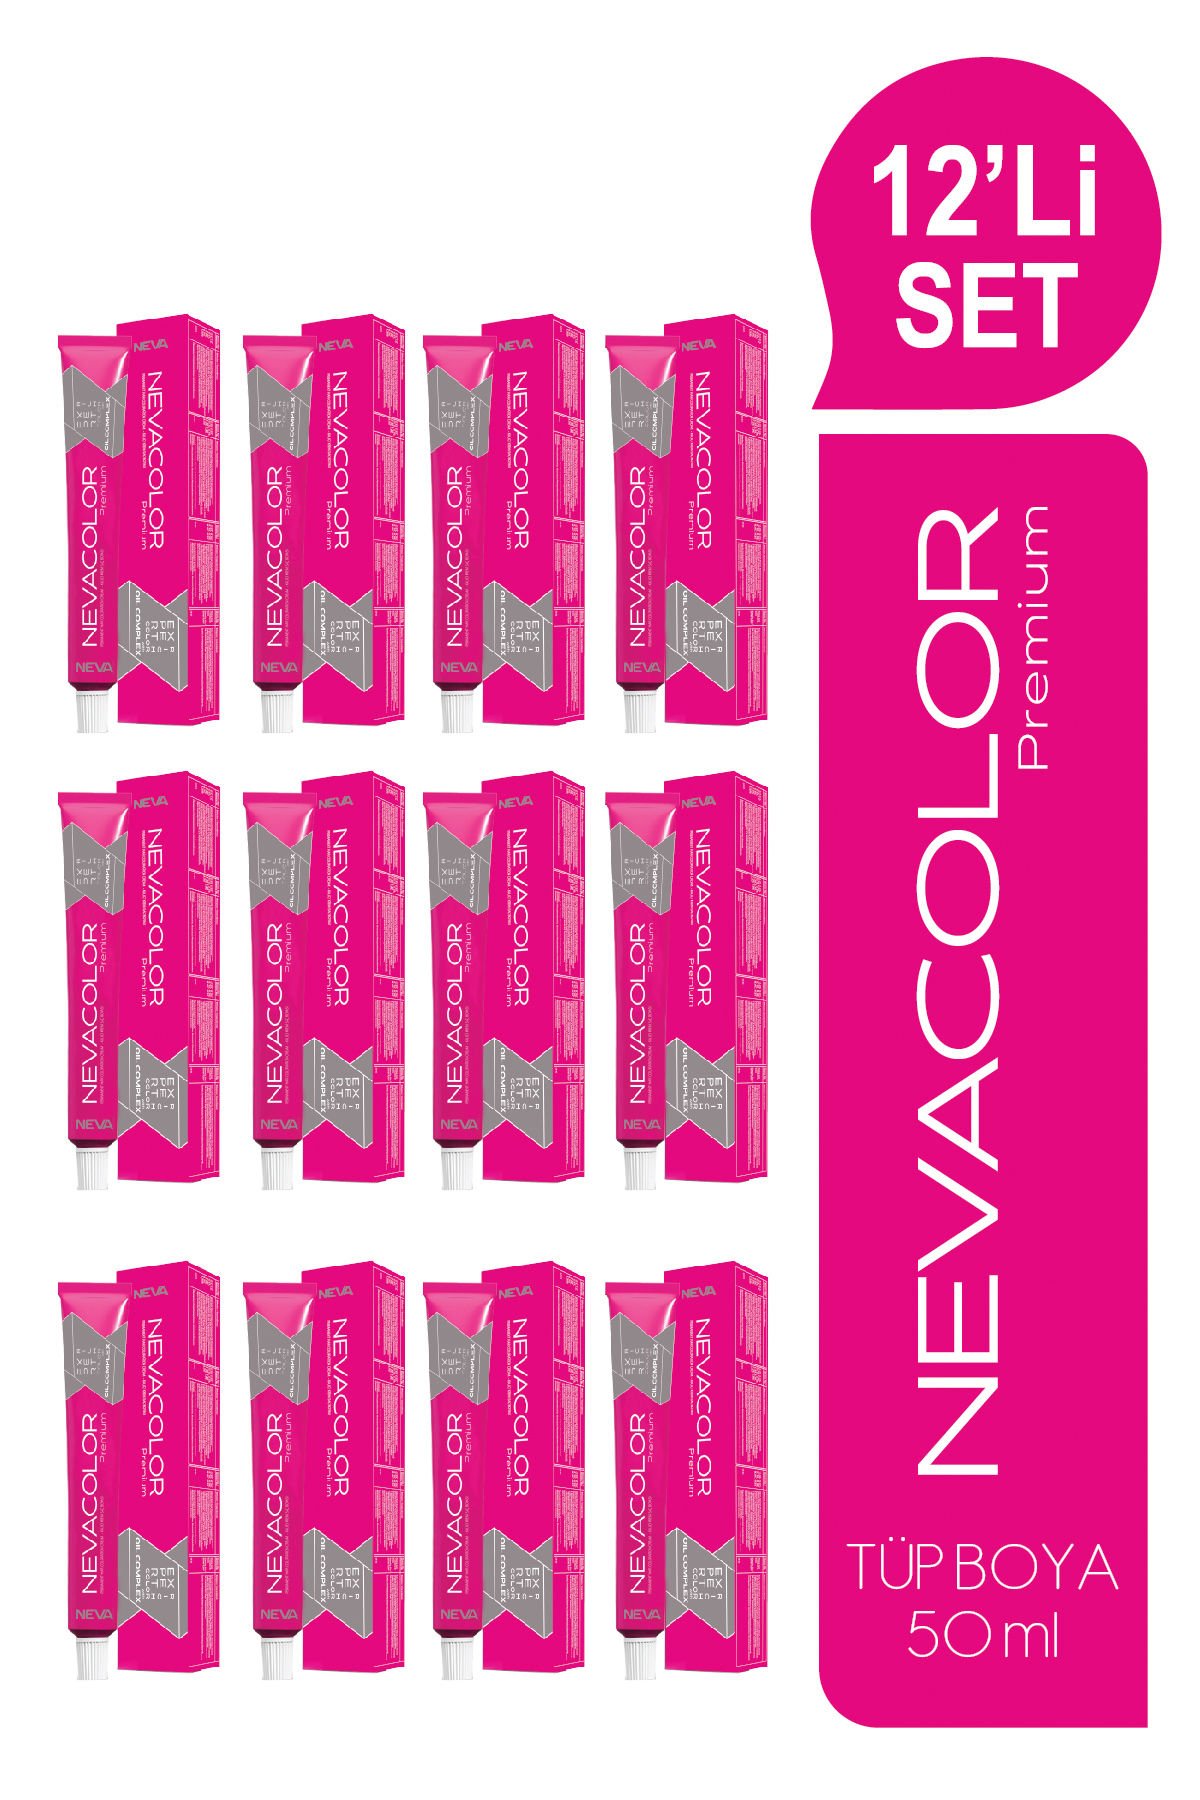 NEVACOLOR Premium 12'Lİ SET  1.1 MAVİ SİYAH Kalıcı Krem Saç Boyası (50ml x 12 adet)